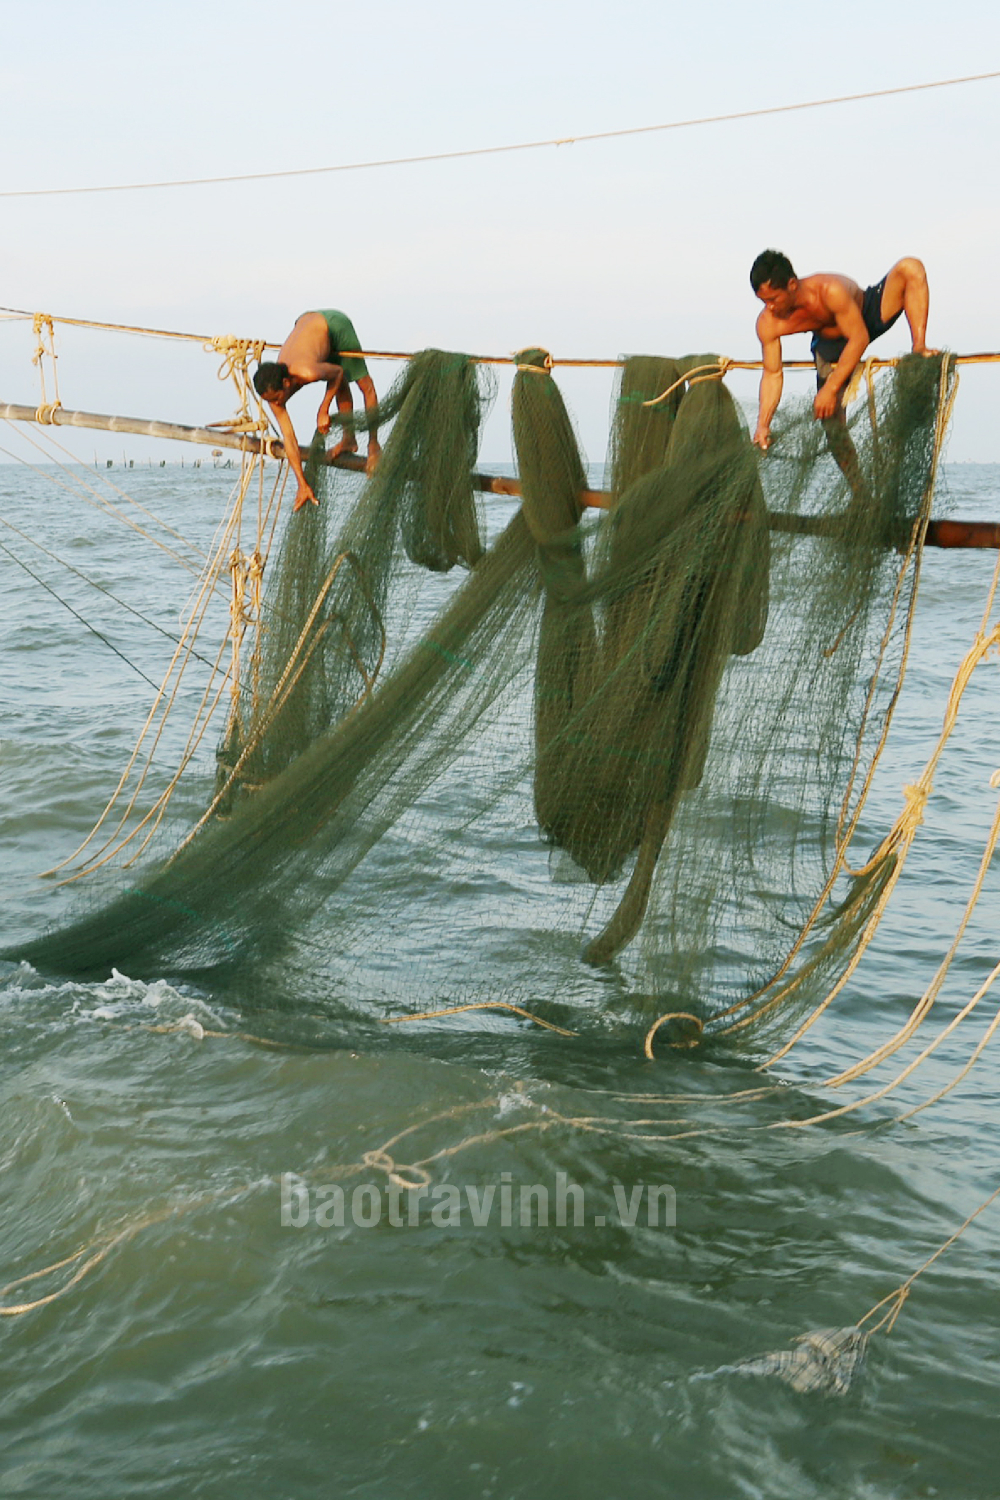 Một cách bắt cá kiểu làm xiếc trên mặt biển ở Trà Vinh đang ngày càng ít người làm, đó là nghề gì?- Ảnh 3.